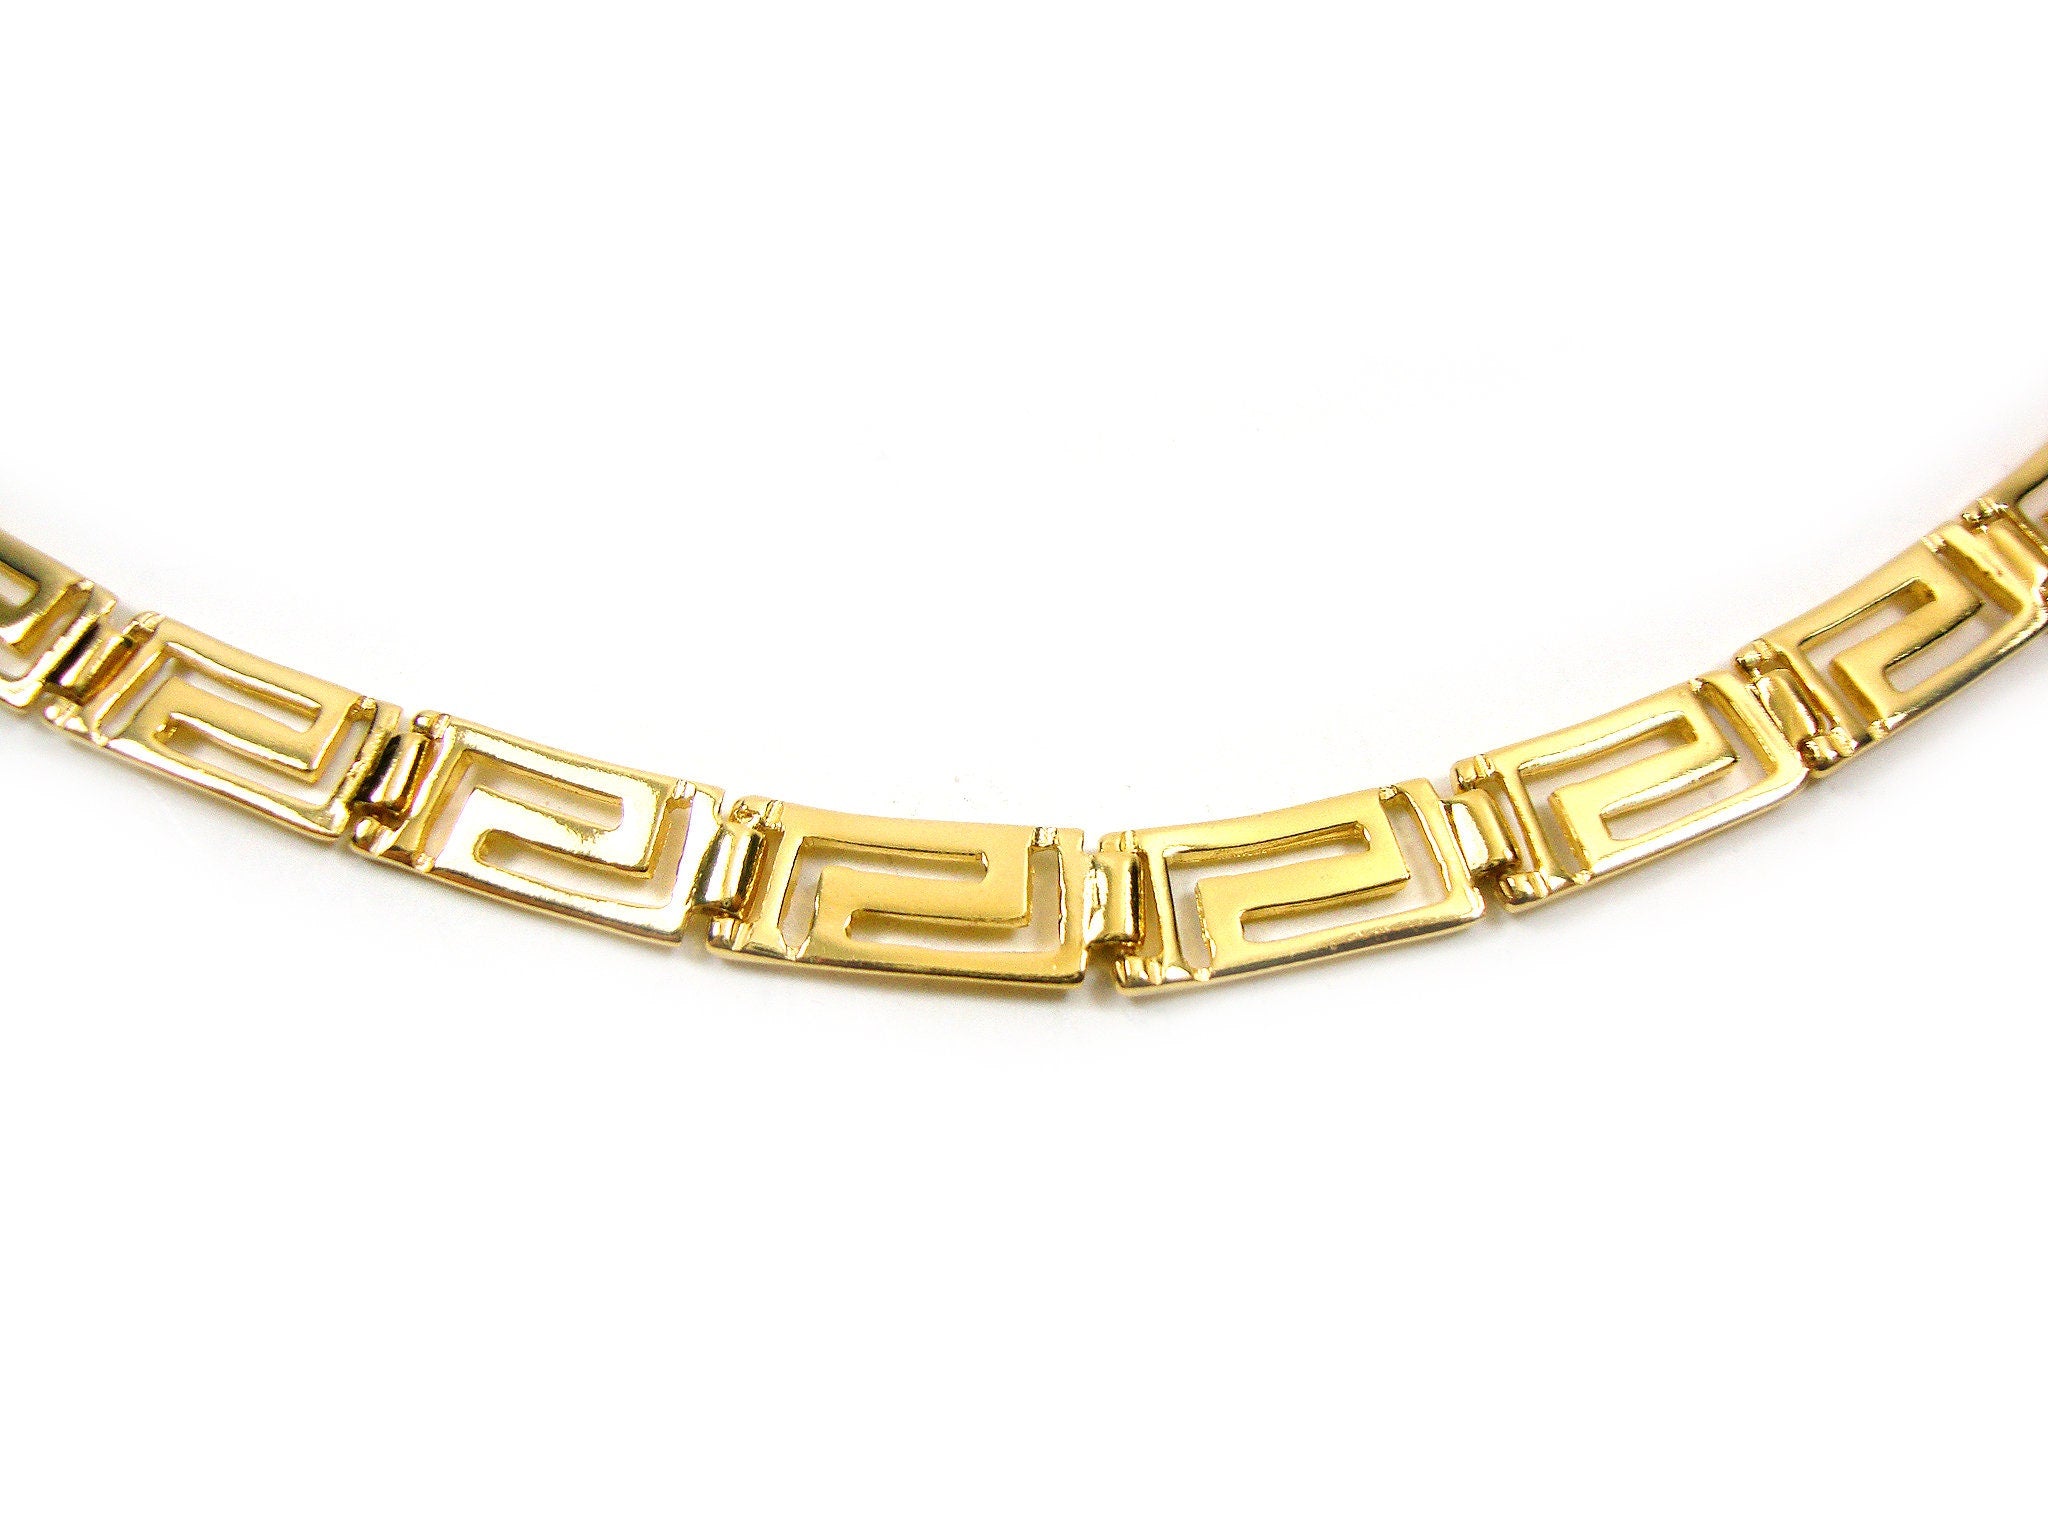 Greek Key Design Necklace | Buy Online | Free Insured UK Delivery